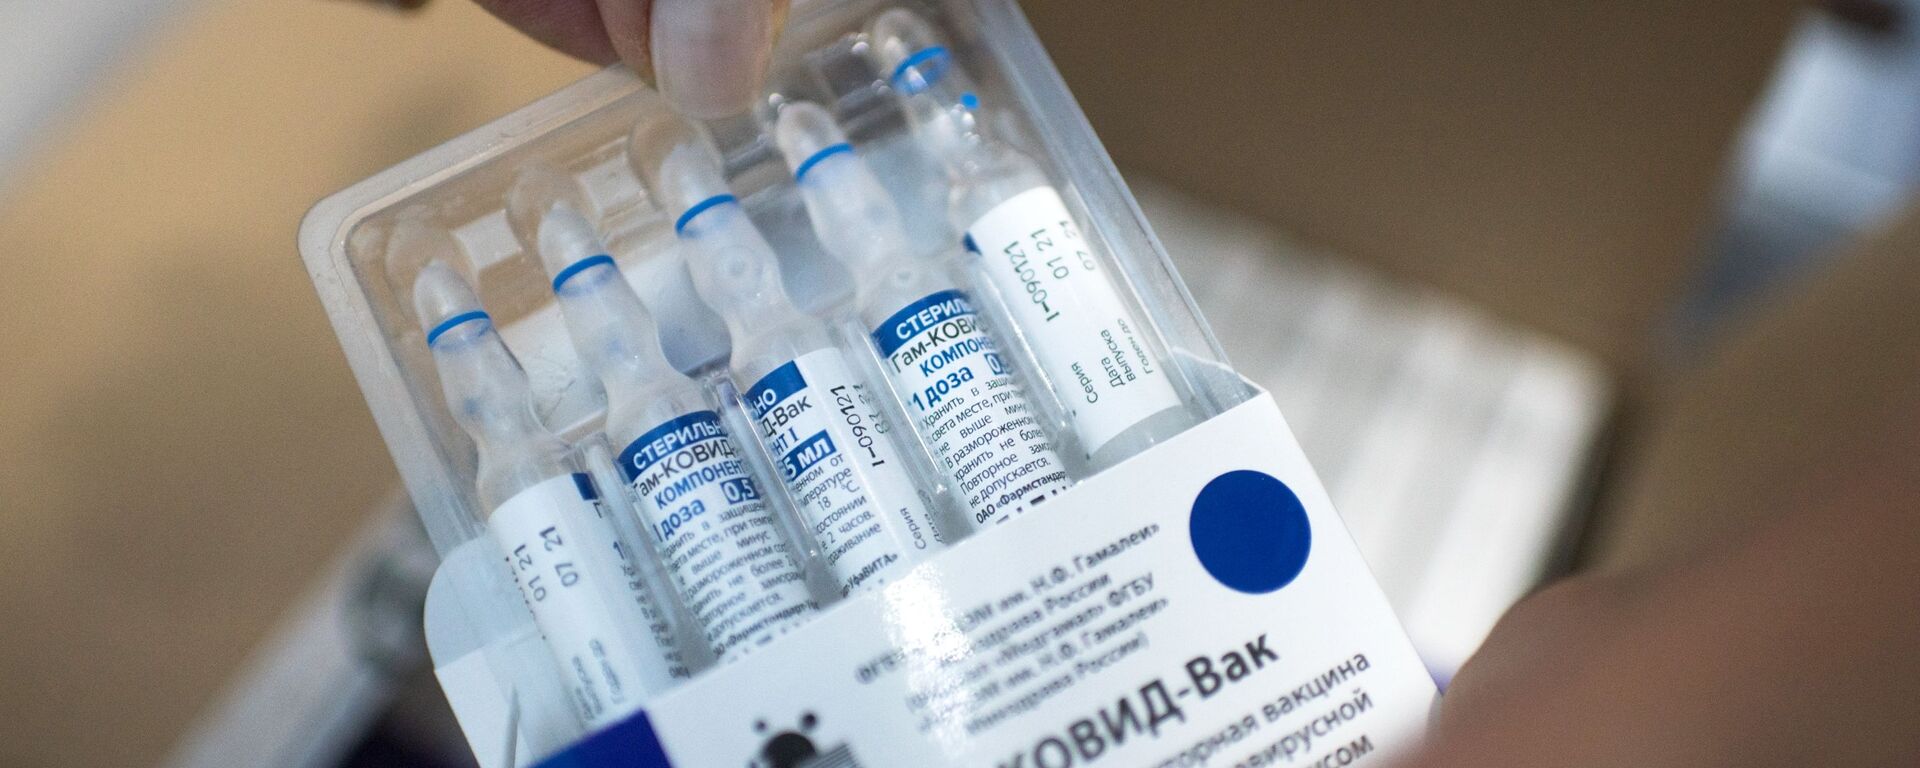  بحرین نیز واکسن اسپوتنیک وی را به تصویب رساند  - اسپوتنیک ایران  , 1920, 12.05.2021